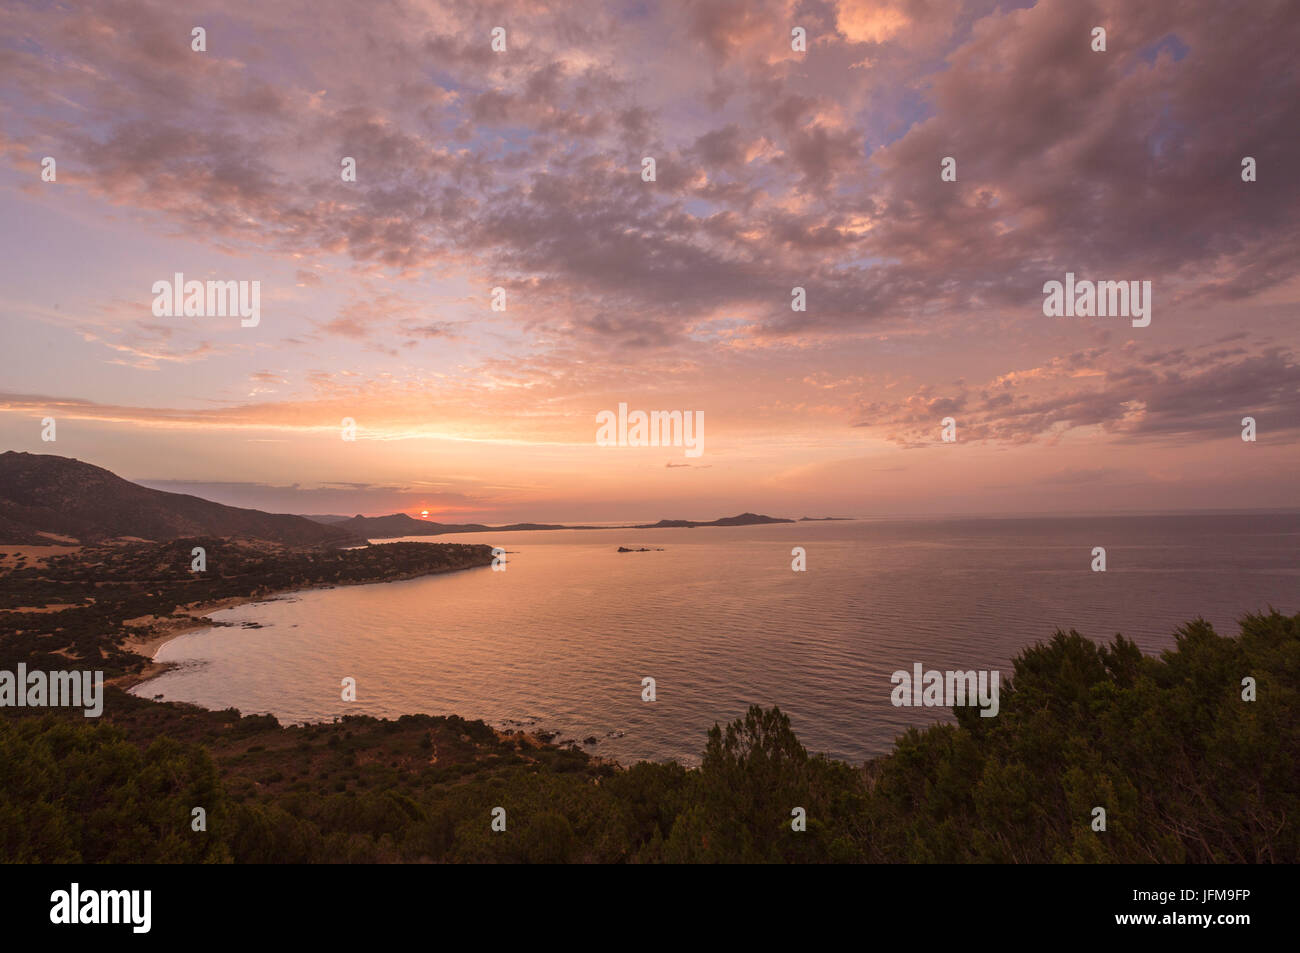 Los colores de la salida del sol se reflejan en el mar alrededor de la playa de Solanas Villasiumus Cagliari Cerdeña Italia Europa Foto de stock